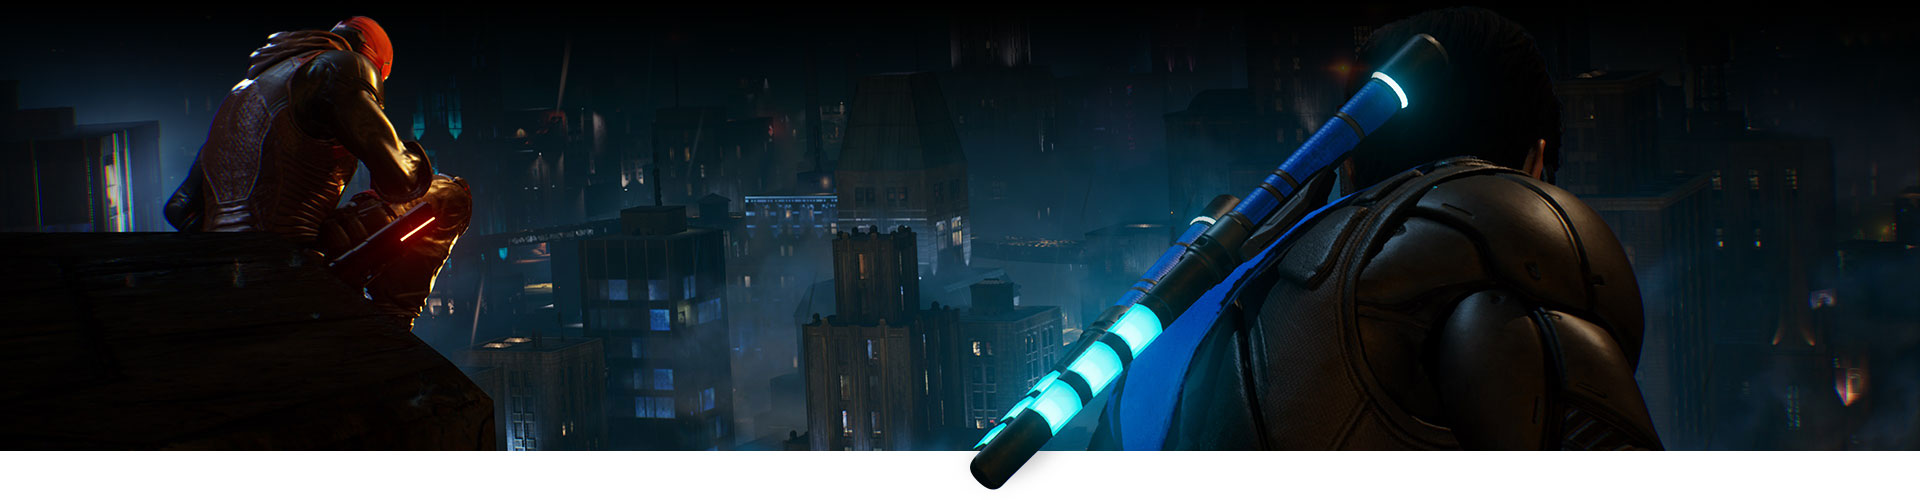 Red Hood et Nightwing sont assis sur un toit et regardent la ville.